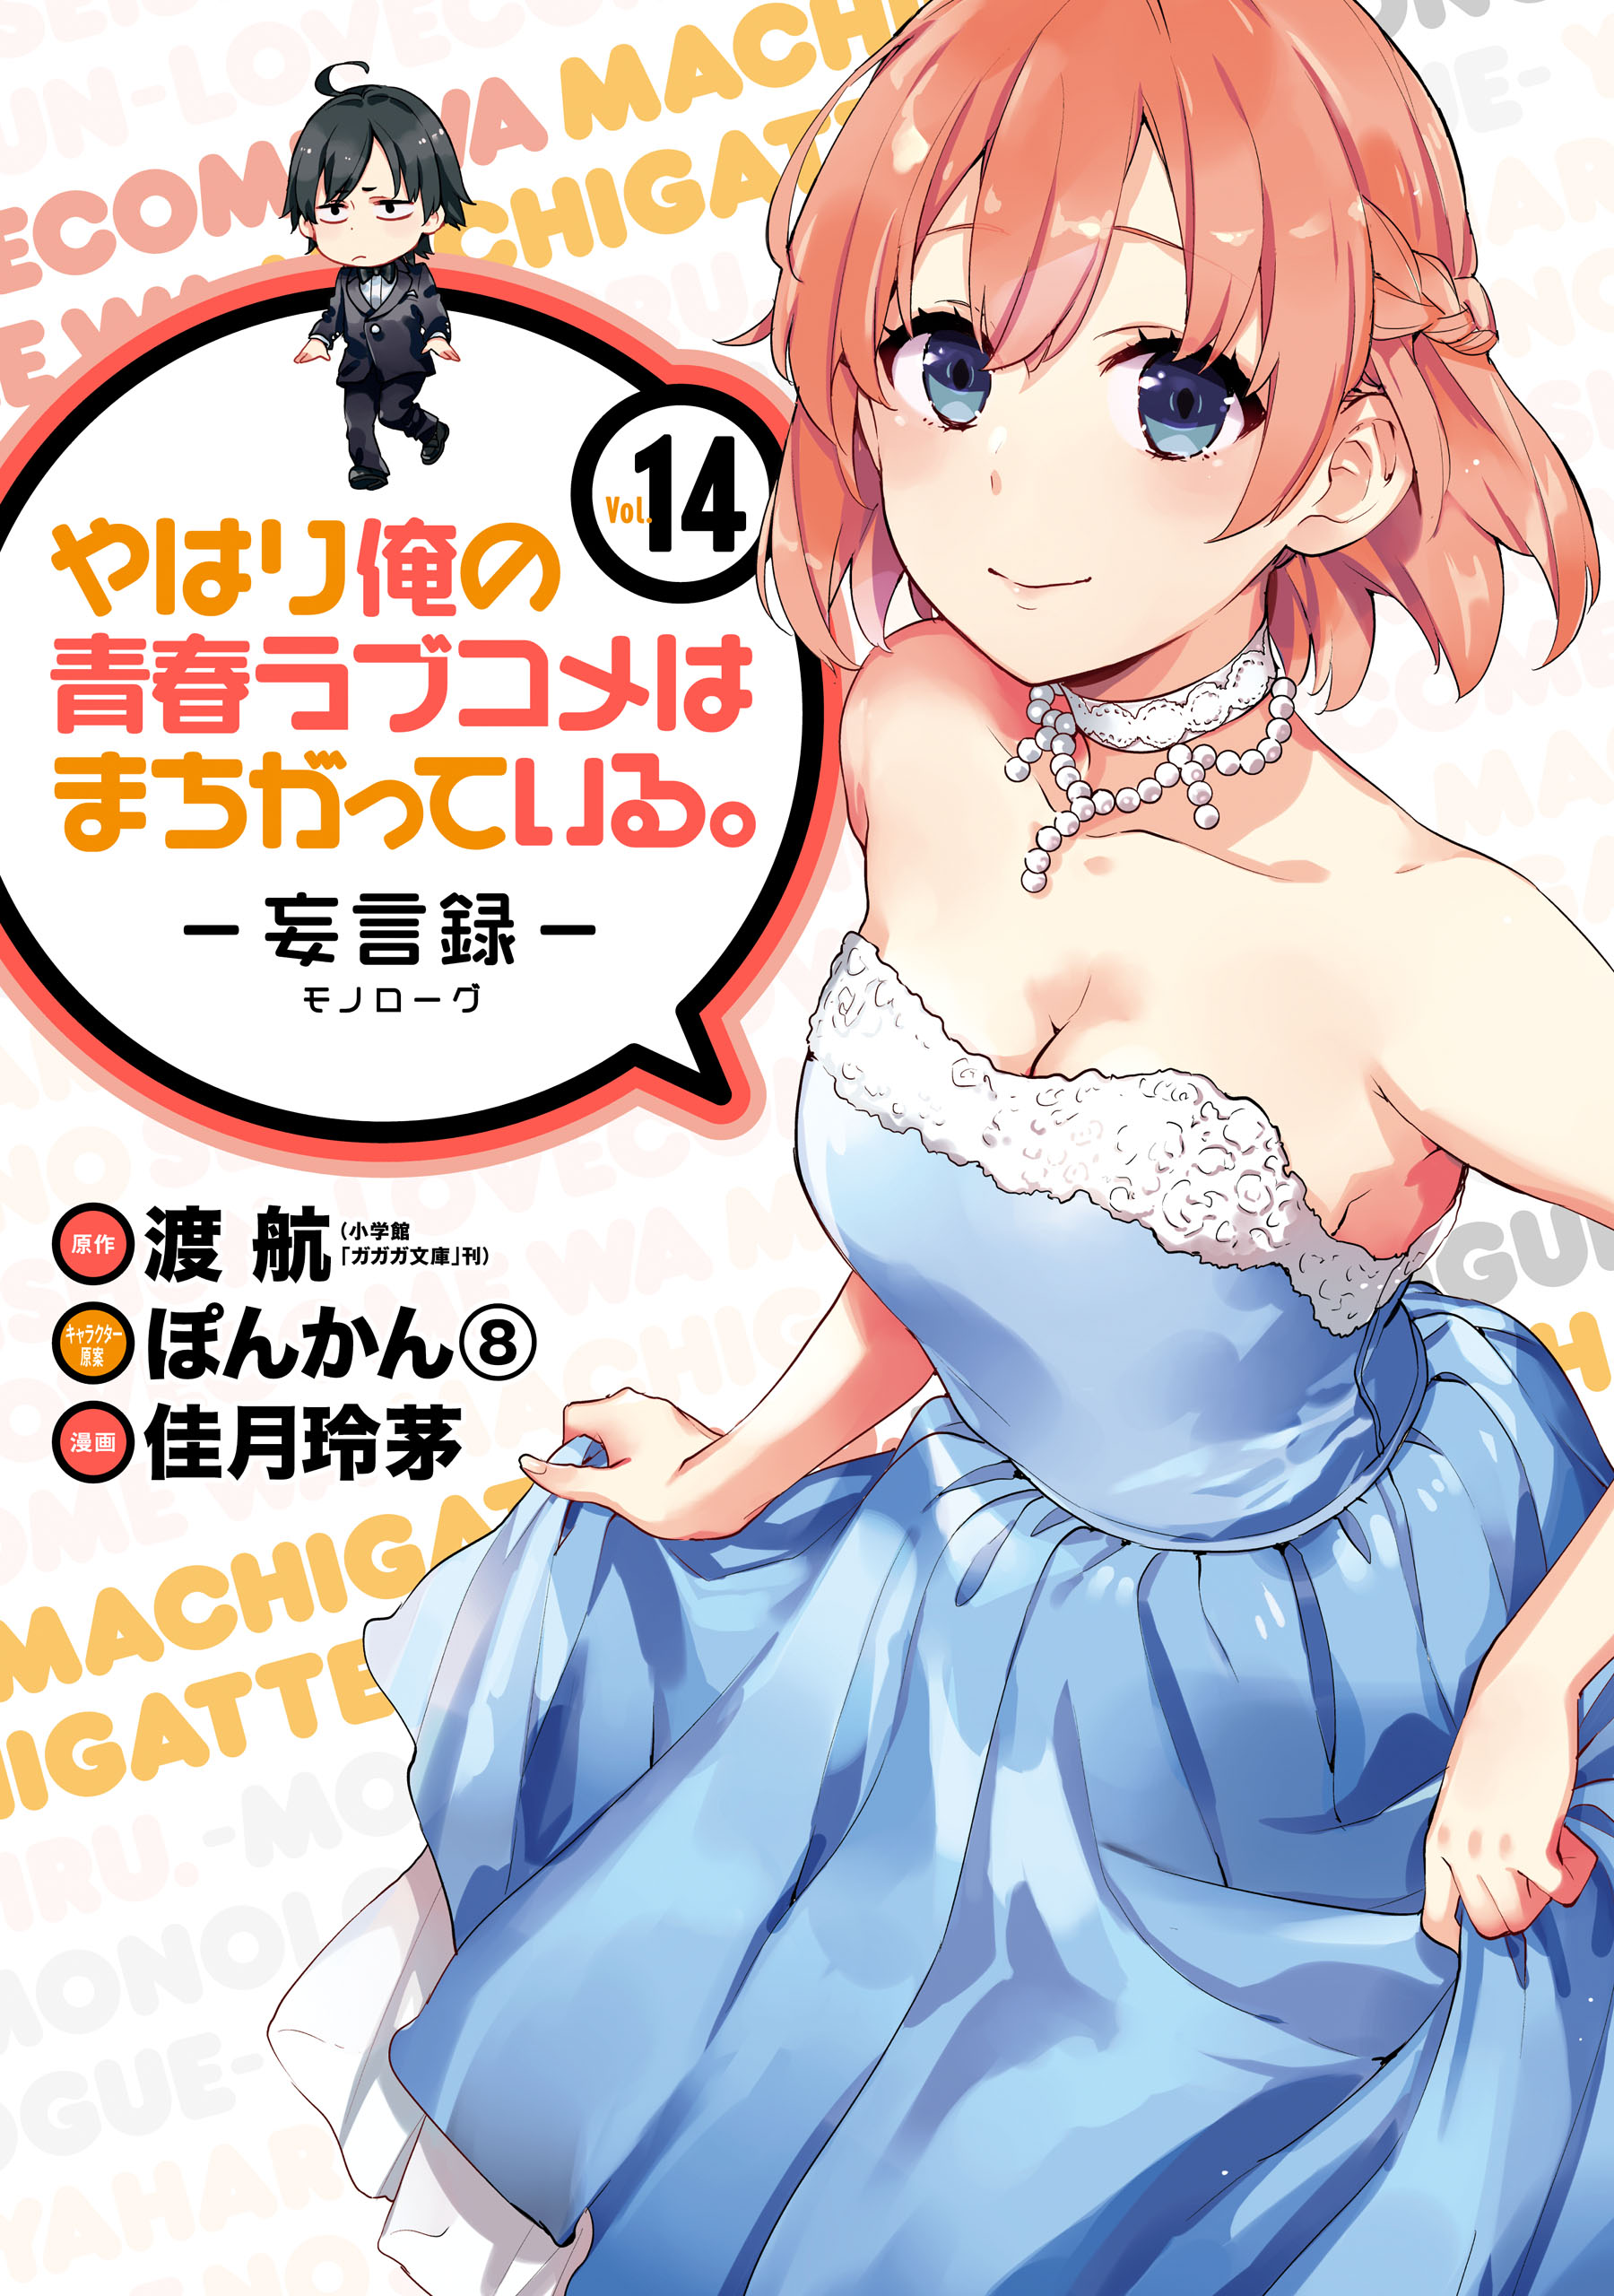 Yahari Ore no Seishun Love Come wa Machigatteiru.: Monologue - MangaDex